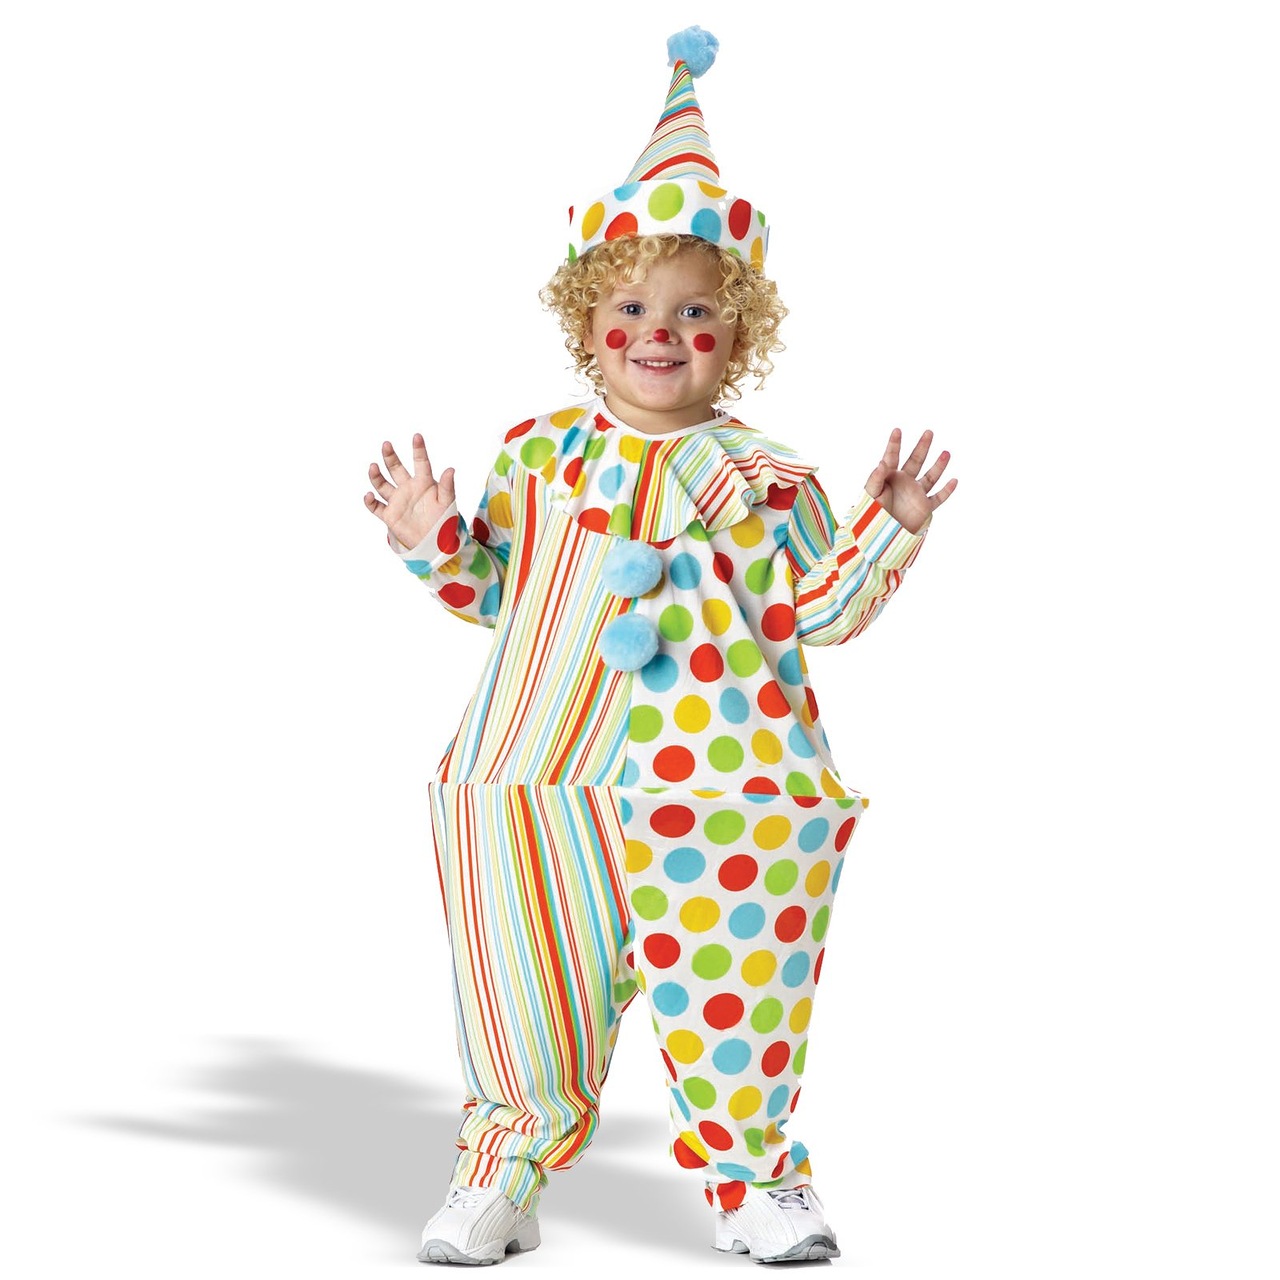 Новогодний костюм петрушки или клоуна для мальчика как сшить своими руками?